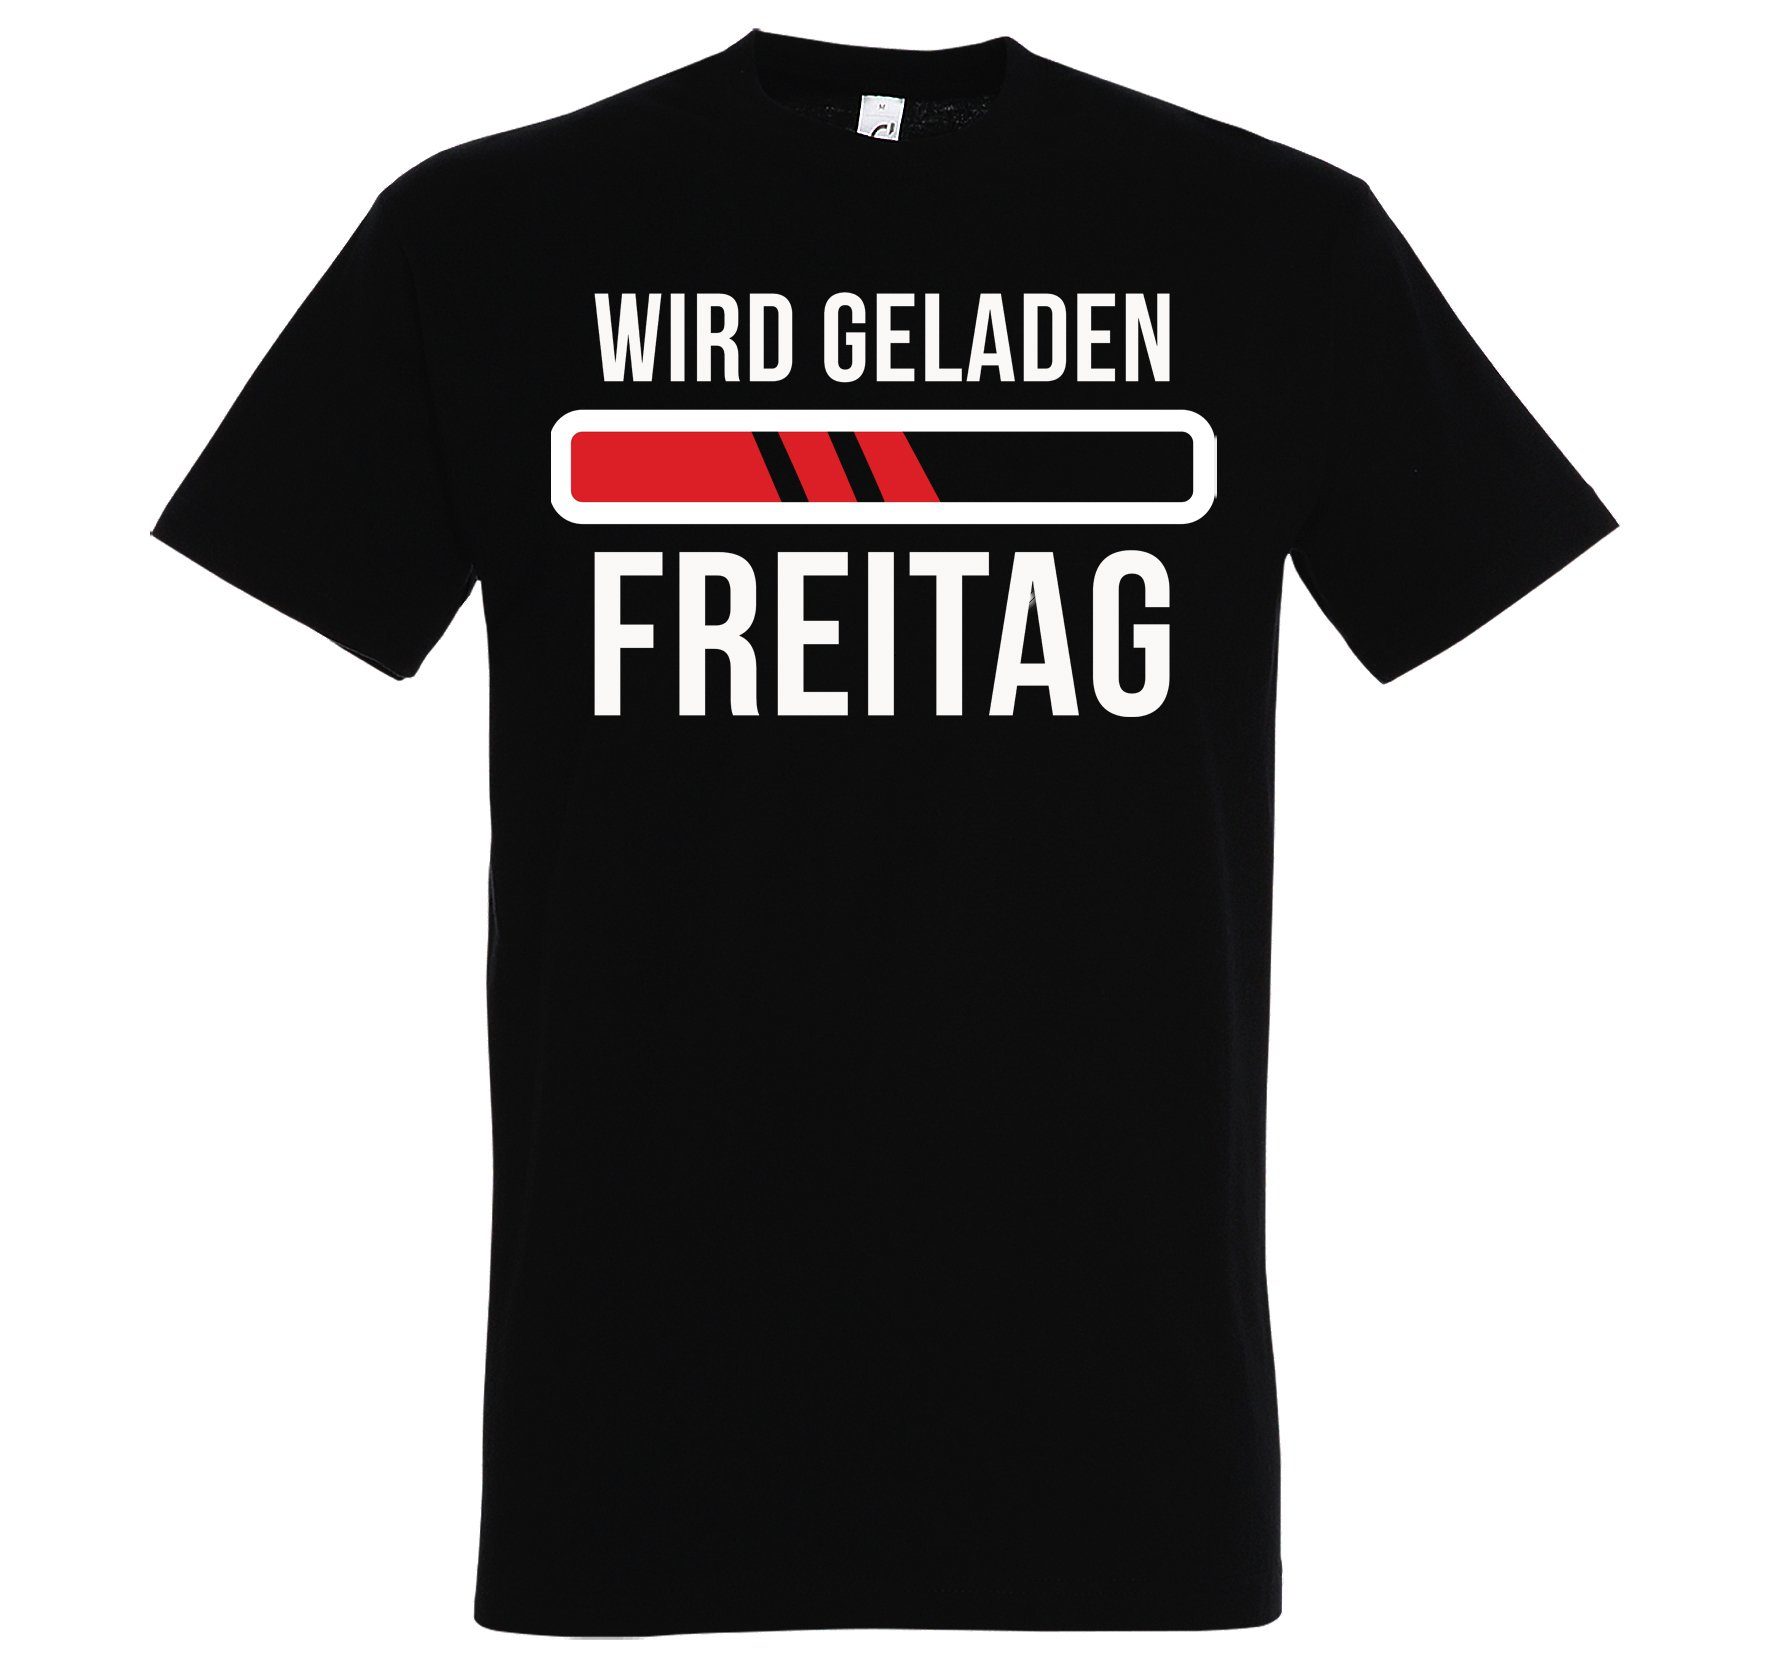 geladen, "Wird Herren Designz T-Shirt Freitag" mit T-Shirt Print Schwarz lustigem Youth